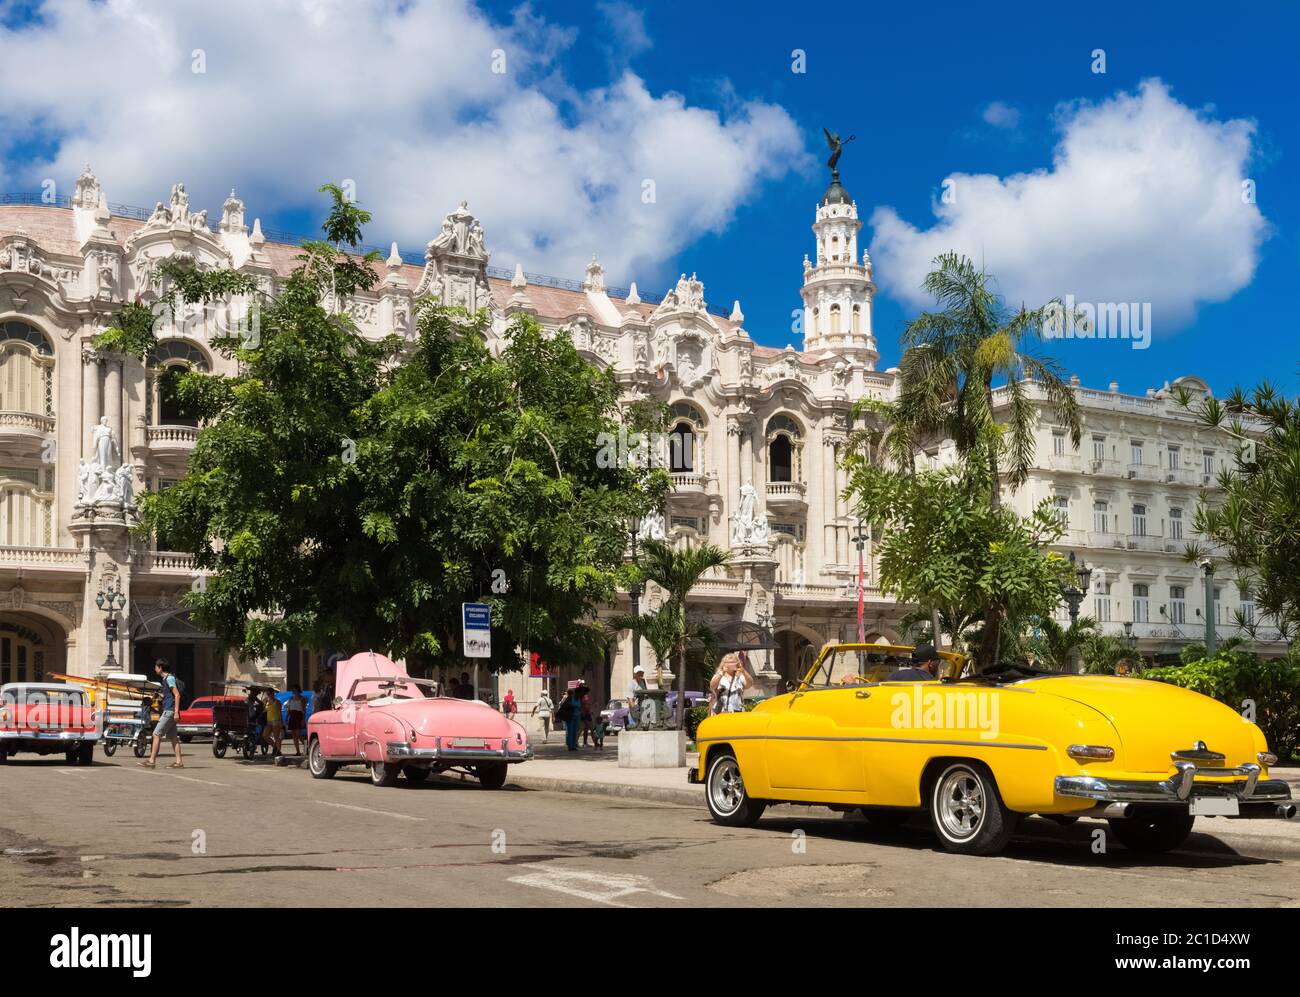 parque de oldtimer ford brookwood amarillo oro americano en cuba - serie cuba reportage Foto de stock